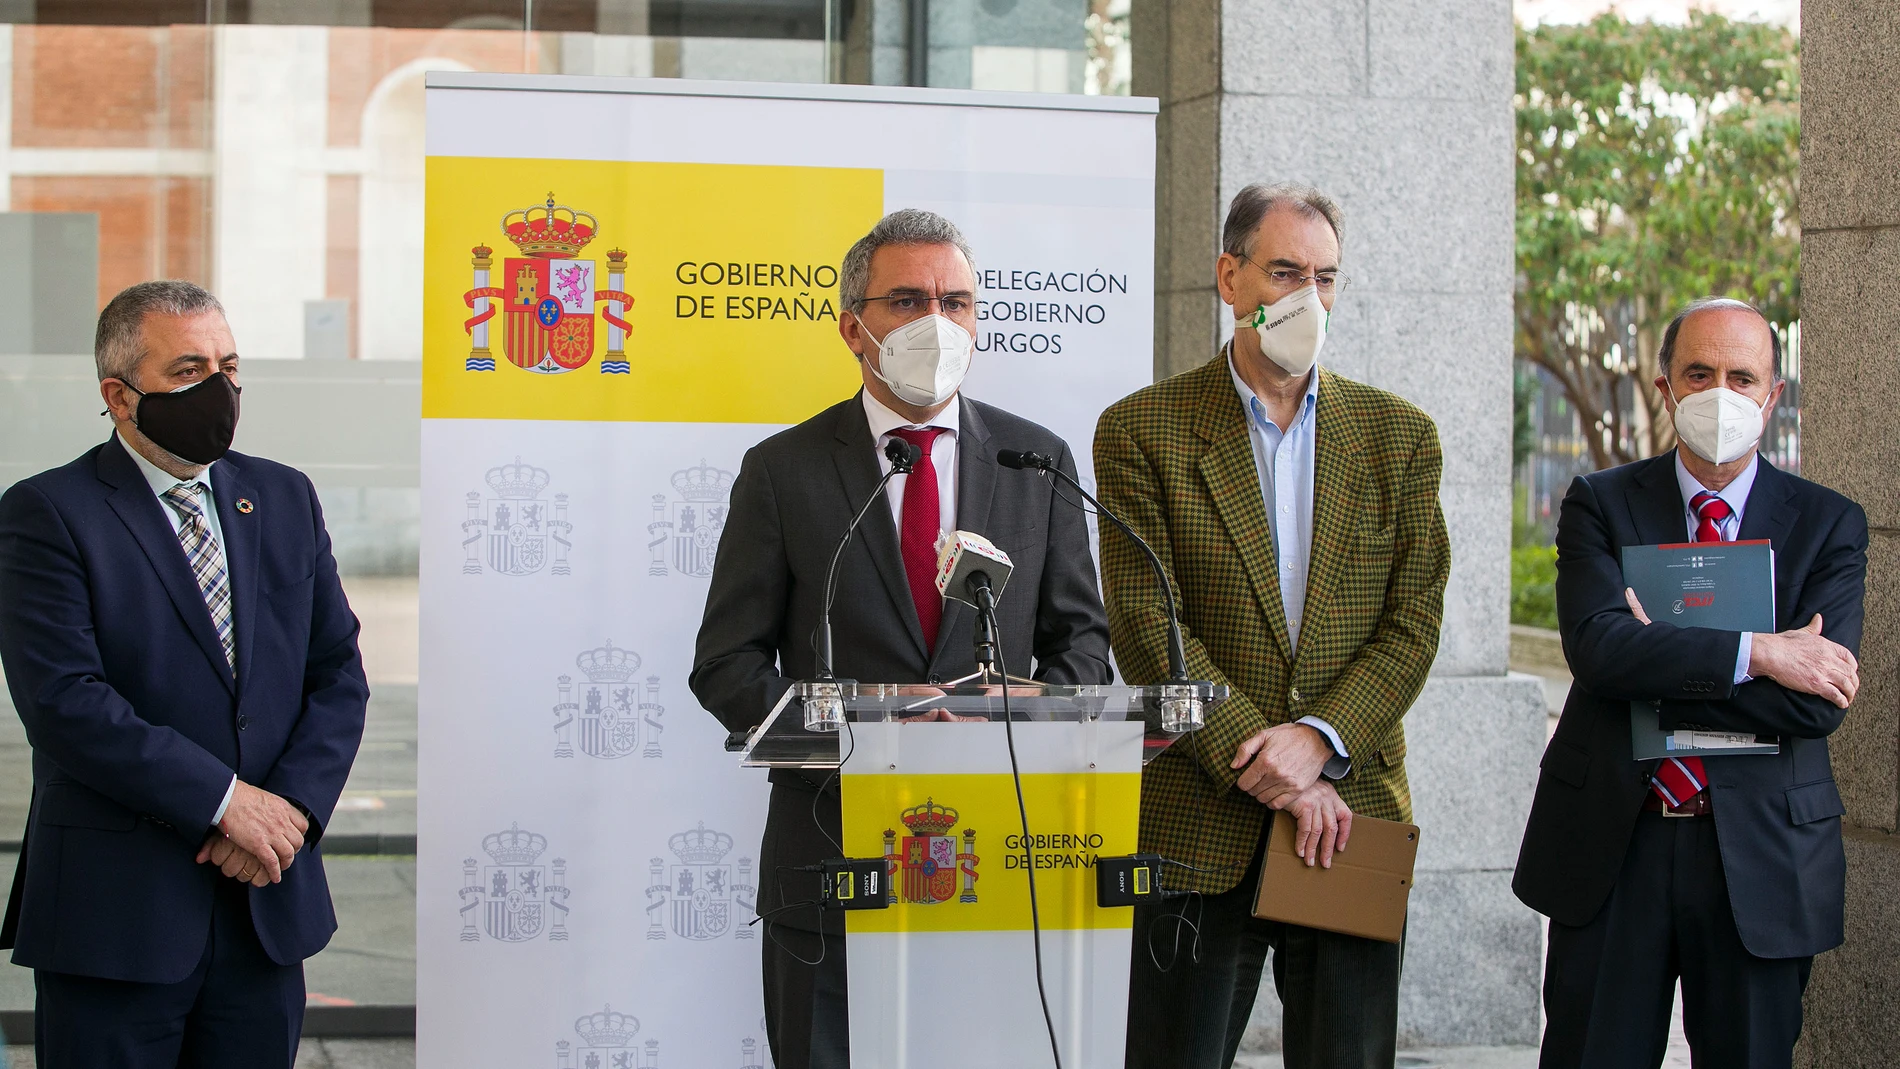 El delegado del Gobierno en Castilla y León, Javier Izquierdo, asiste a la presentación de la Manifestación de Interés del proyecto europeo 'Transformación de la cadena de valor de la nueva movilidad sostenible' organizada por la Confederación de Asociaciones Empresariales de Burgos.